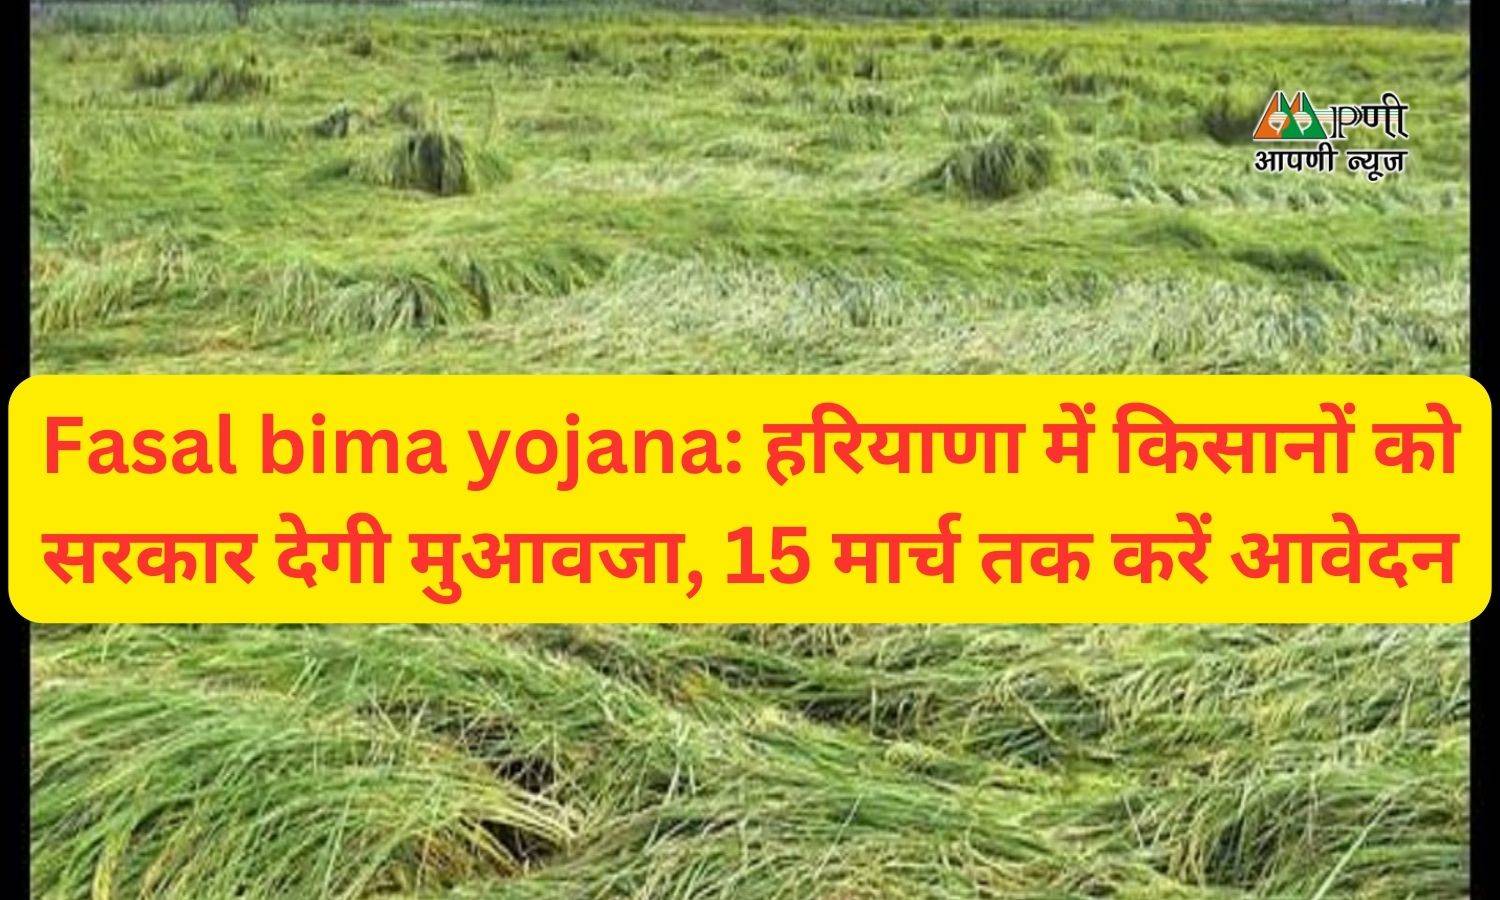 Fasal bima yojana: हरियाणा में किसानों को सरकार देगी मुआवजा, 15 मार्च तक करें आवेदन